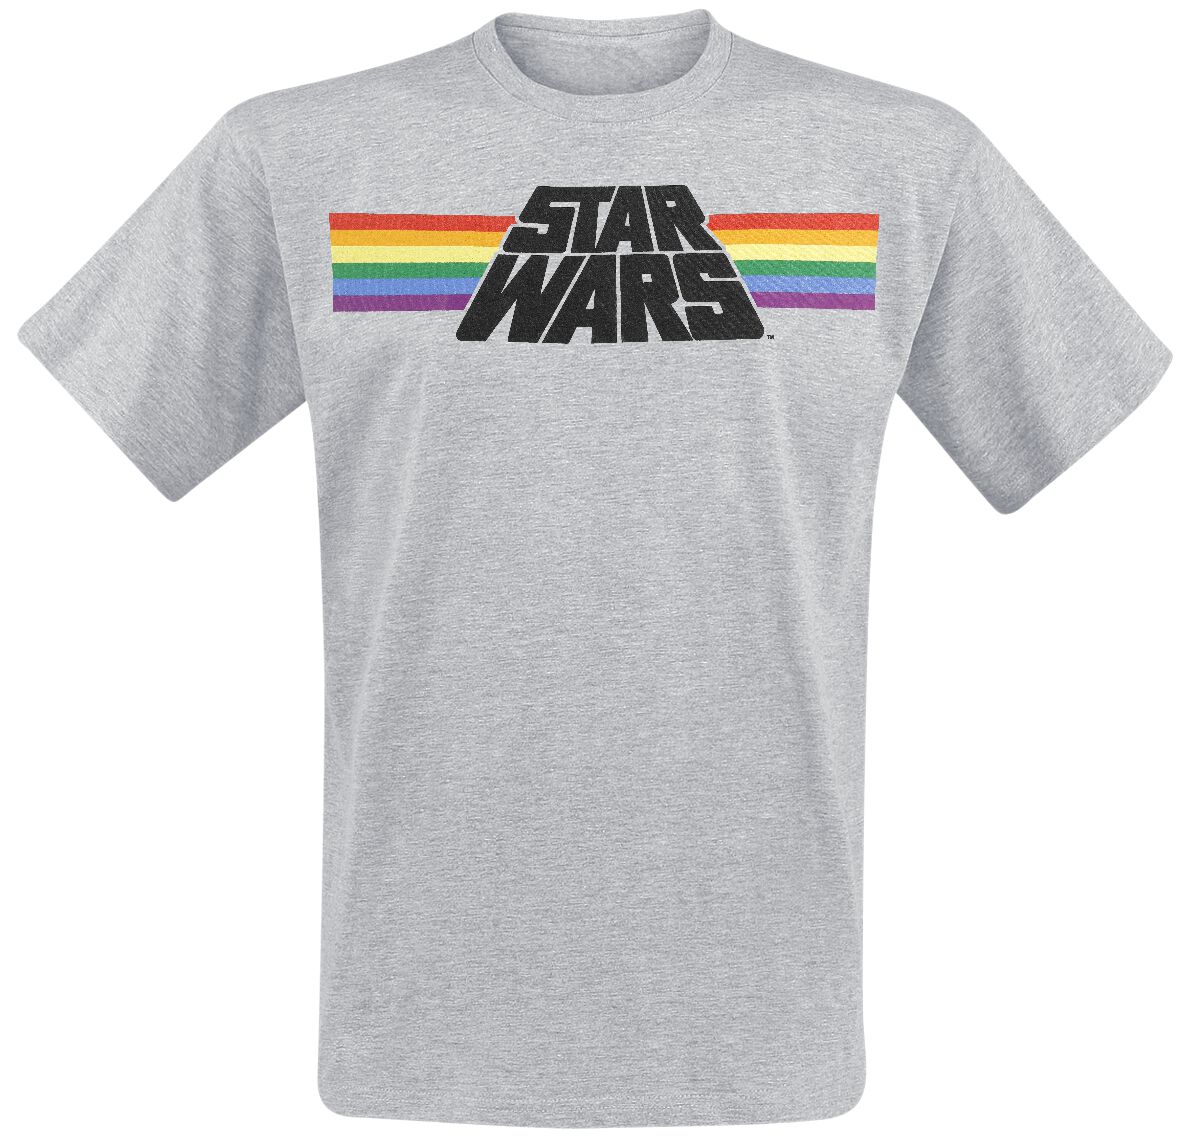 Star Wars T-Shirt - Classic Rainbow - M bis 3XL - für Männer - Größe L - grau meliert  - Lizenzierter Fanartikel